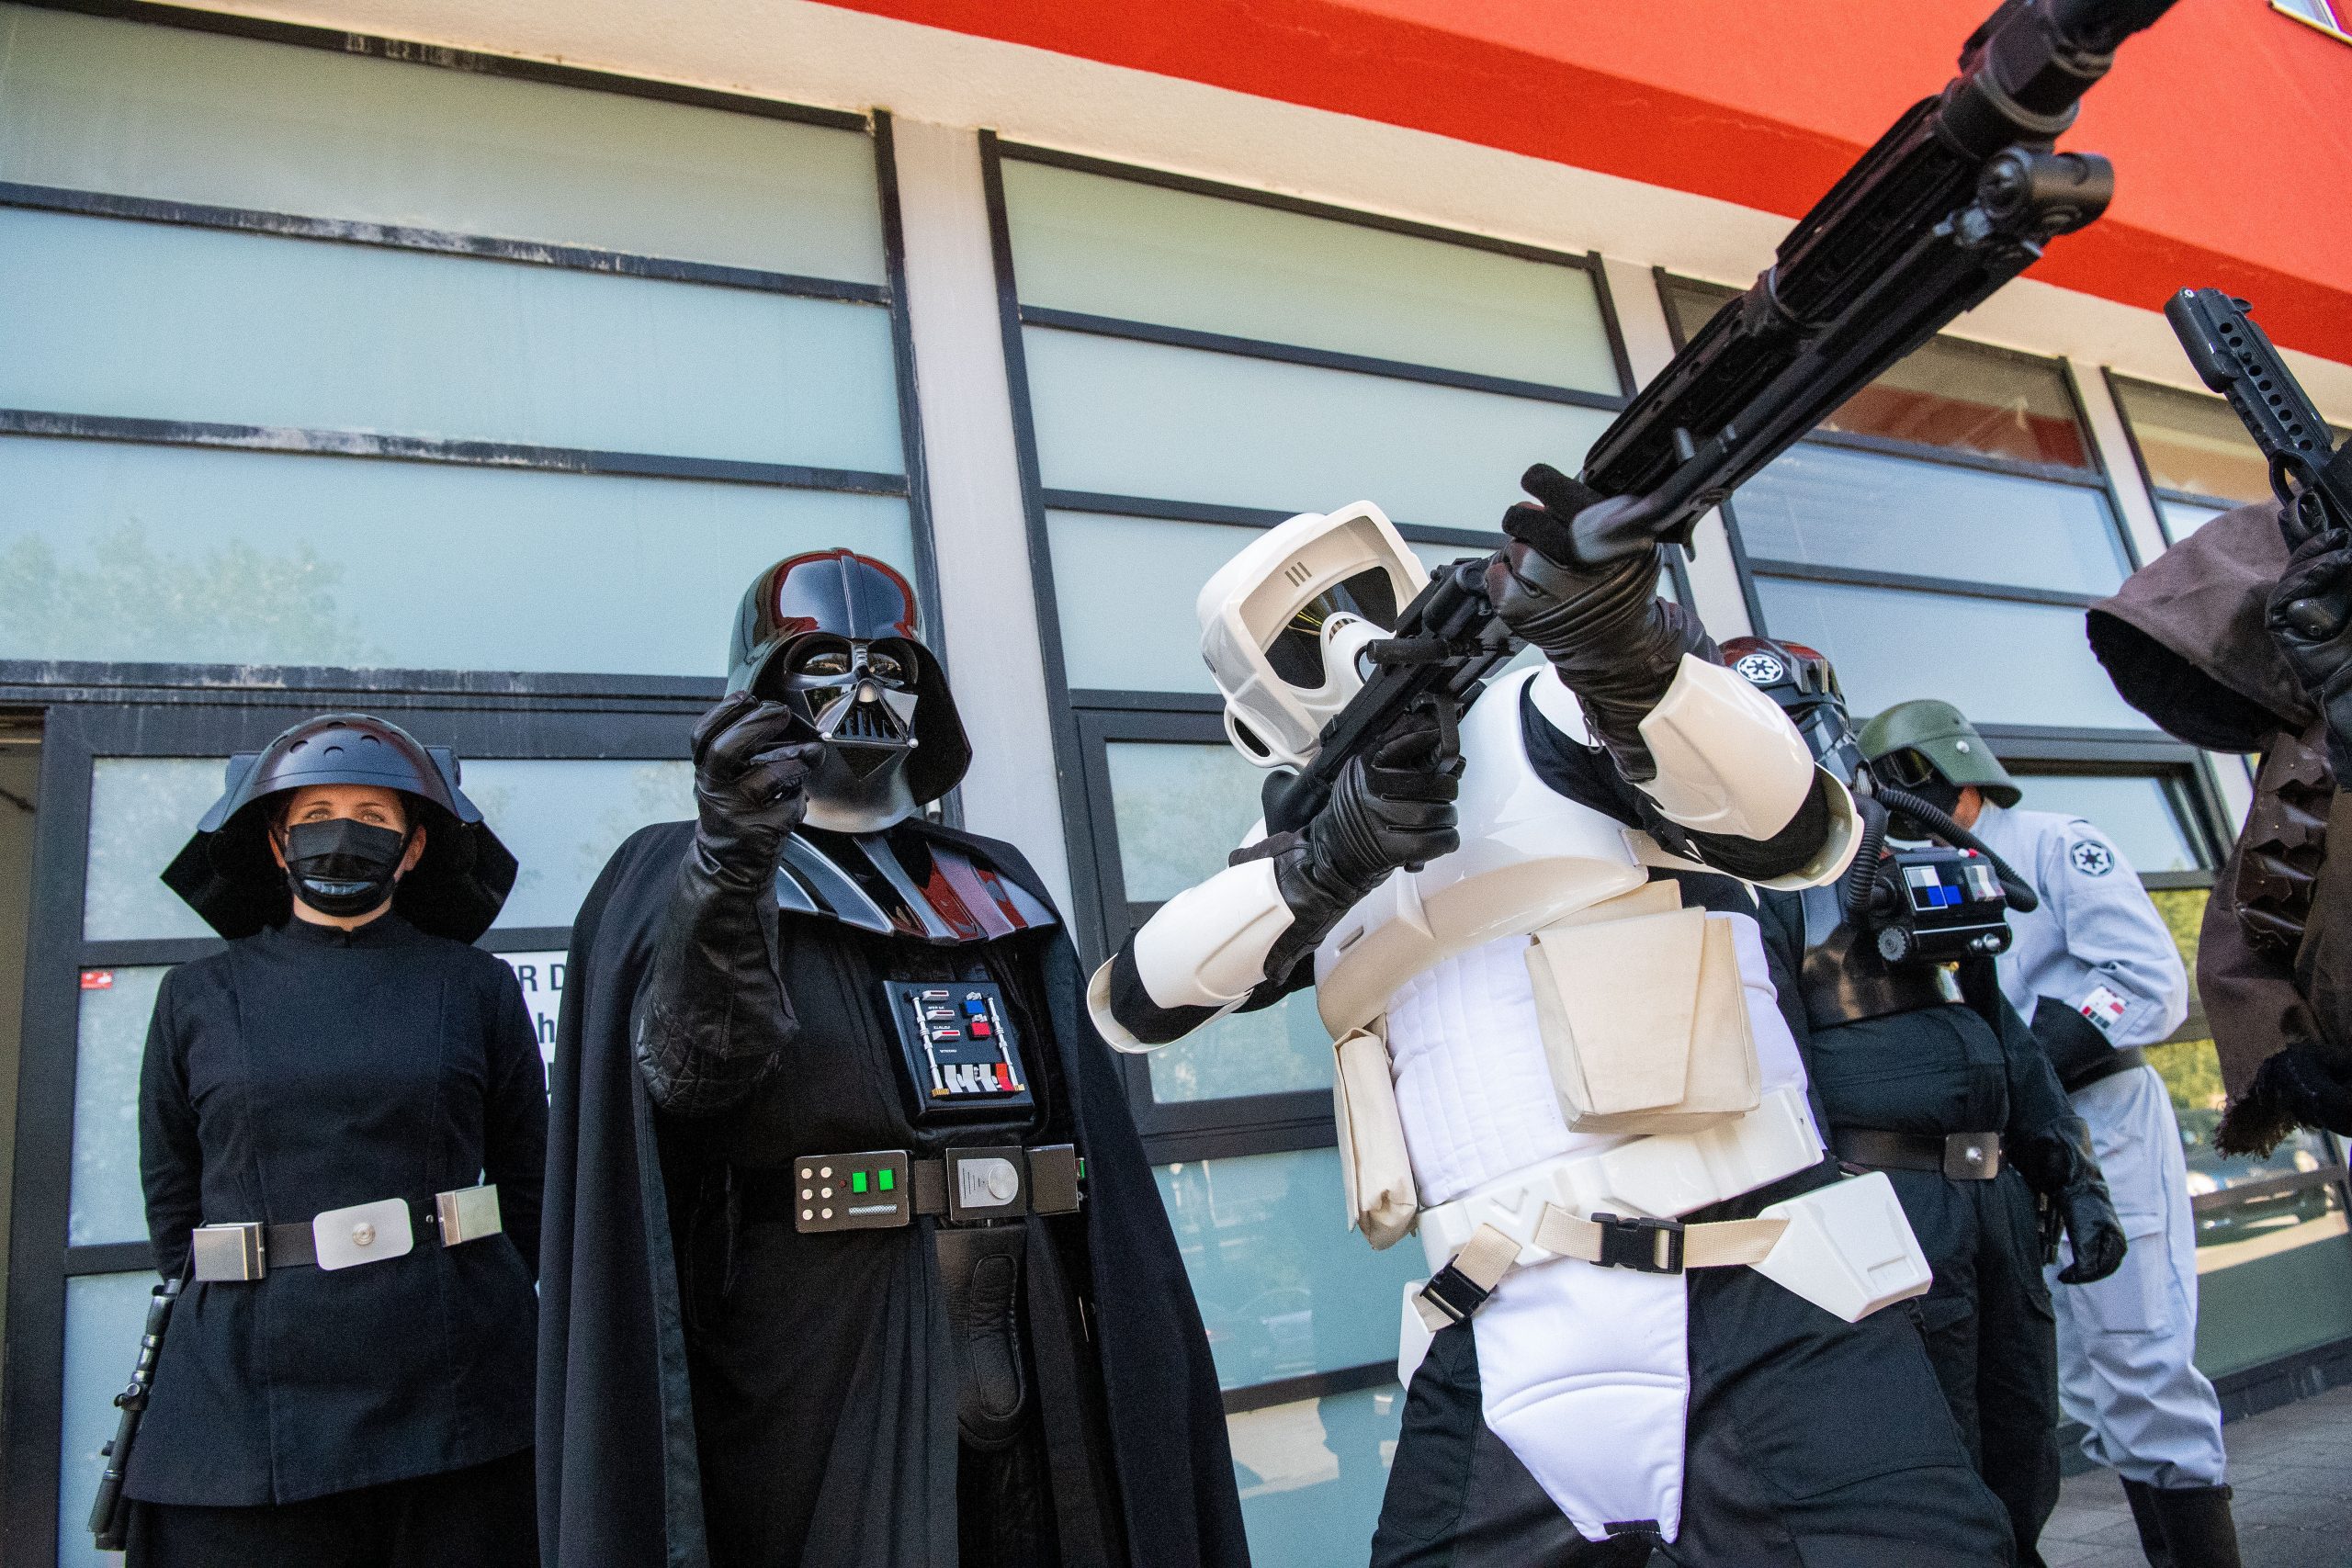 Darsteller in Kostümen aus der Filmreihe Star Wars stehen vor dem Duisburger Impf-Zentrum.